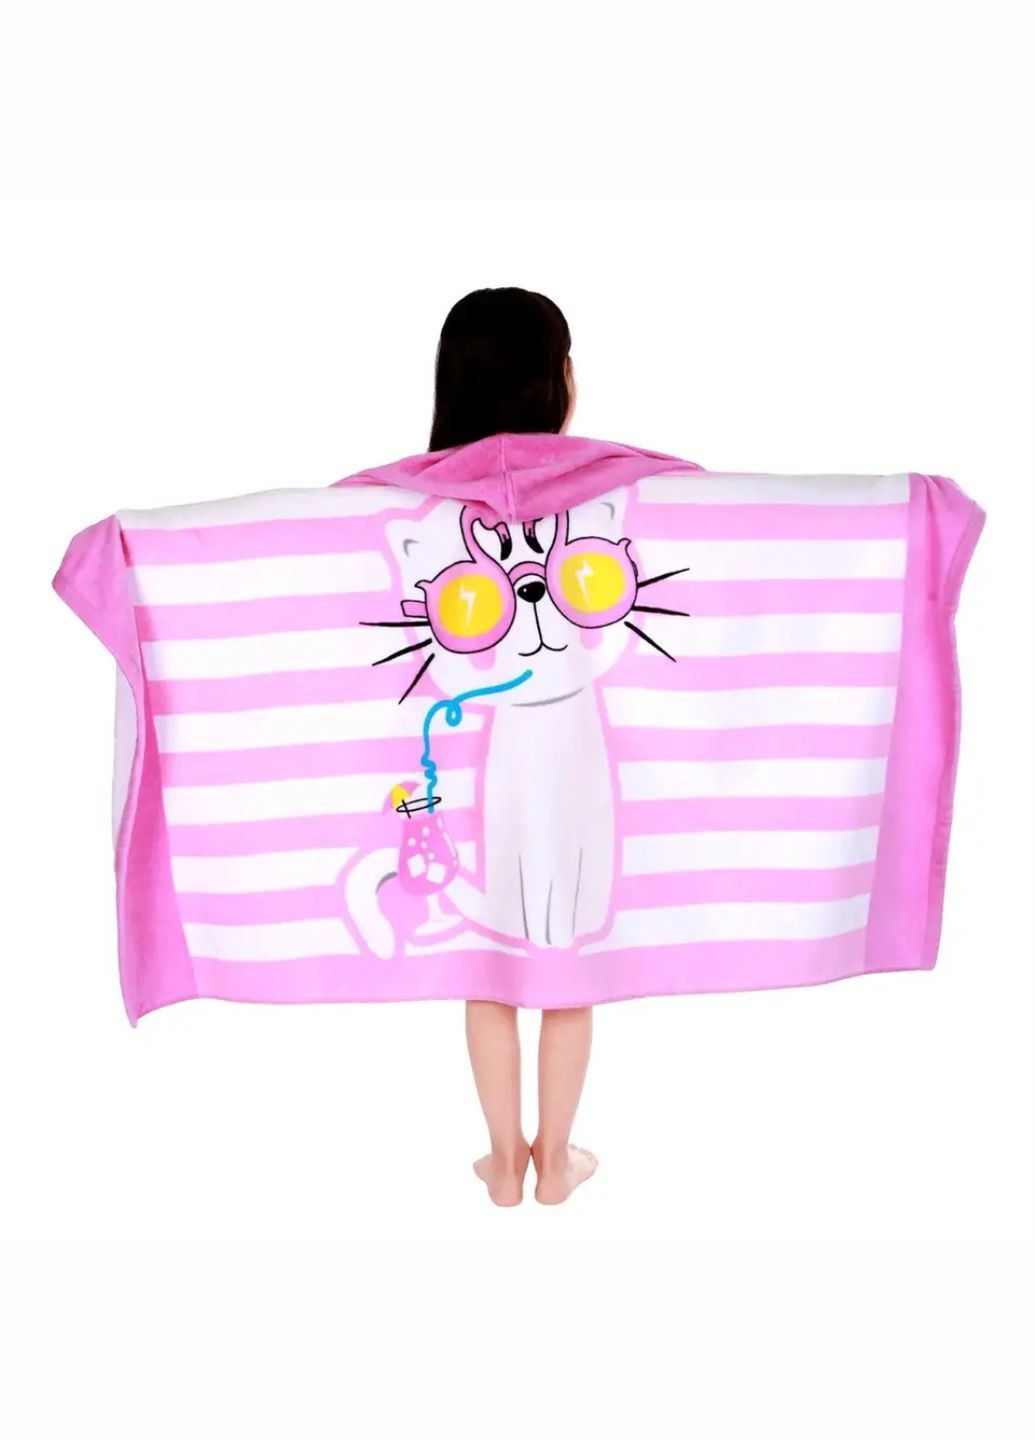 Lovely Svi дитячий рушник пончо – пляжний рушник з капюшоном ( махра 76 х127 см від 3-12 лет) в бассейн котик розовий смужка рожевий виробництво - Китай